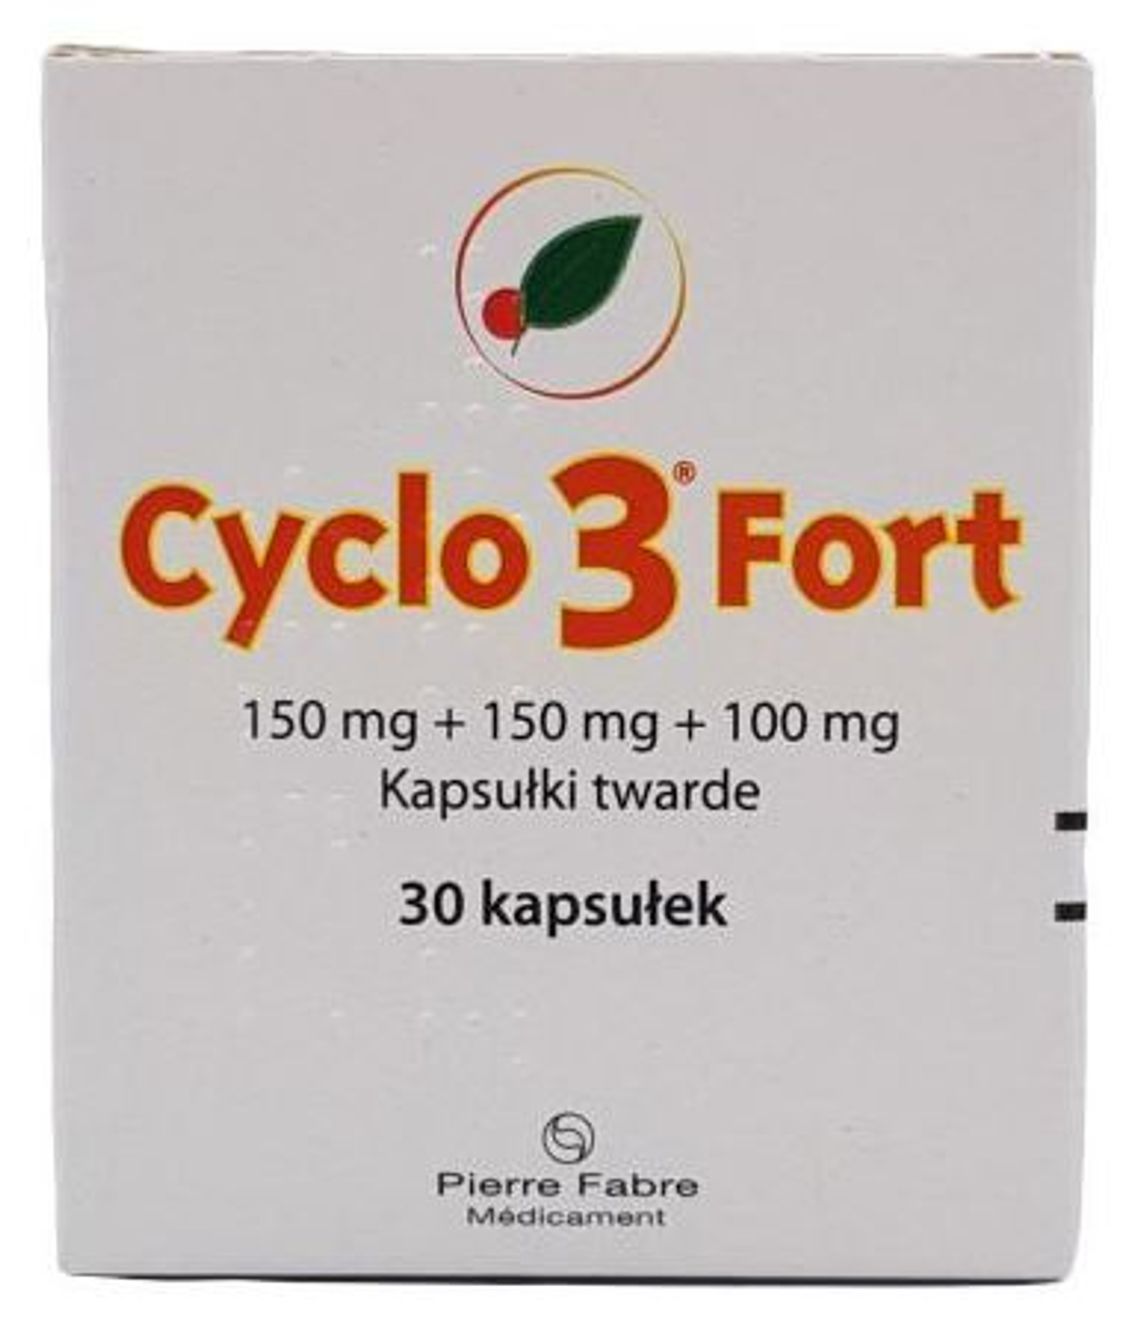 Cyclo 3 Fort do nabycia w Aptece FAMILIA